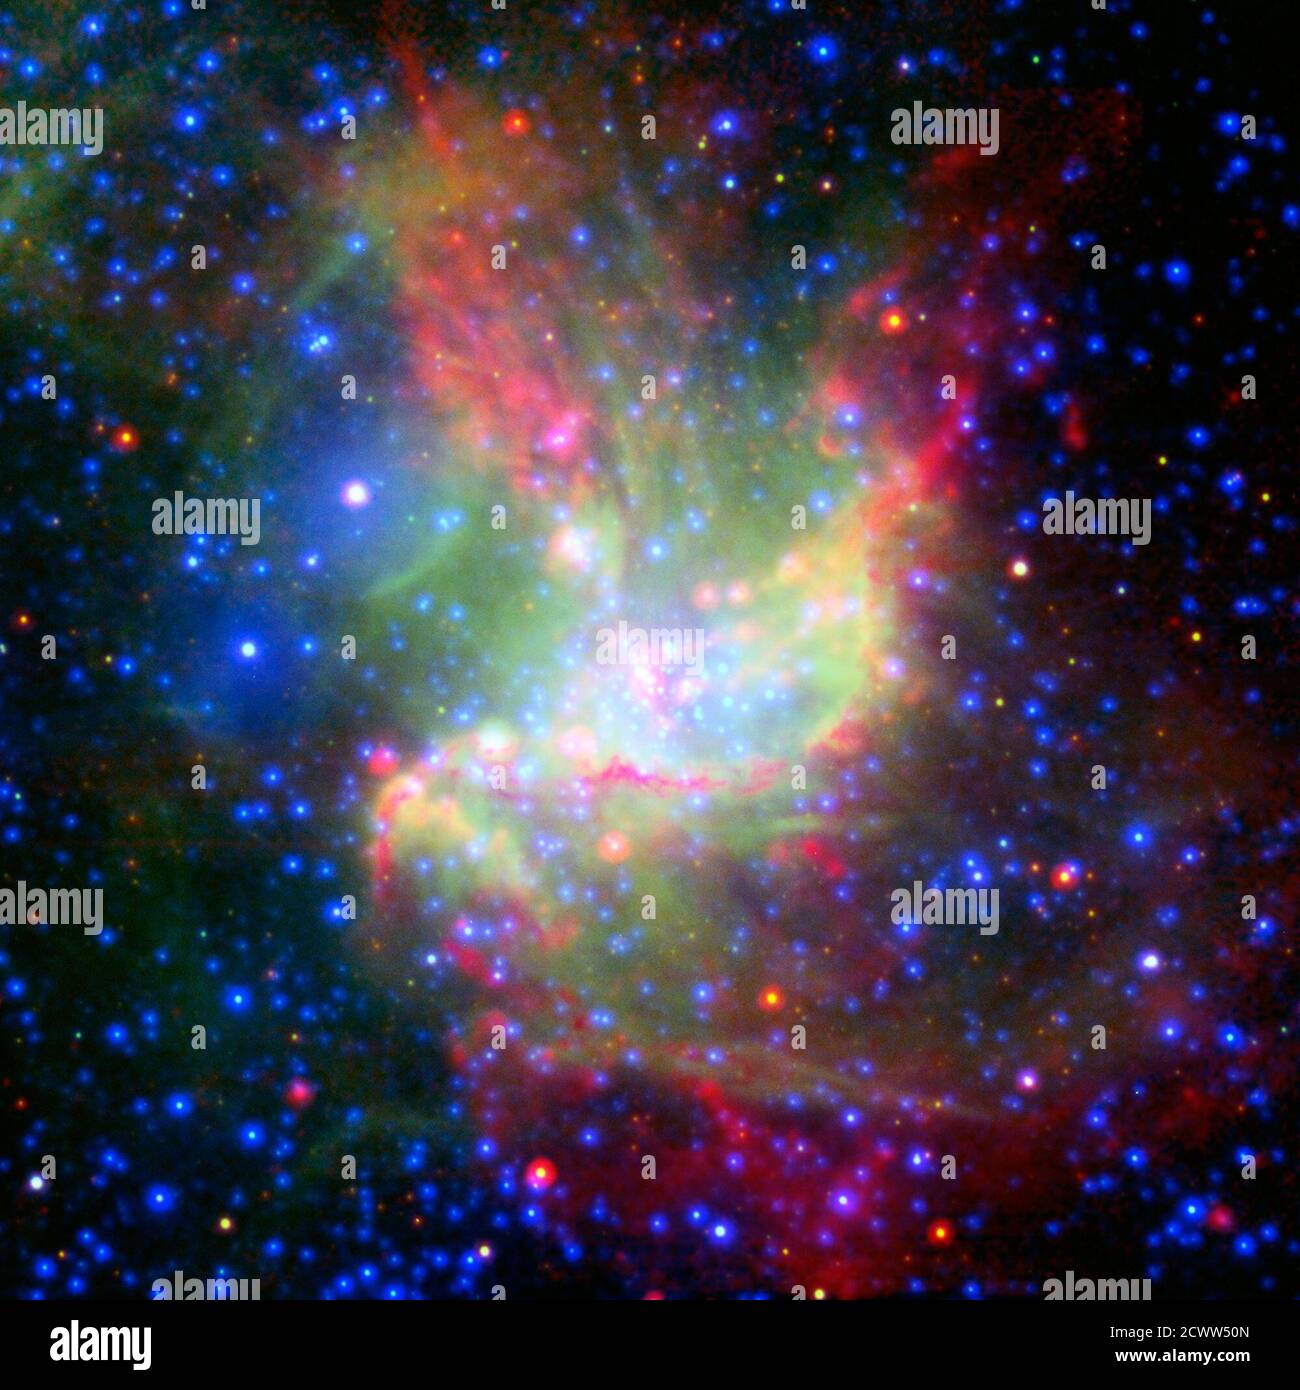 Stelle in fuga in Stellar Nursery lo scintillante bagliore di giovani stelle domina le immagini del gigante stellare nursery NGC 346, nella vicina galassia nana chiamata la nuvola di Magellano piccola. Ma questa bellezza fotogenica non è solo un "bel volto". Questa immagine della nuvola formante stelle è una combinazione di luce a più lunghezze d'onda proveniente dal telescopio spaziale della NASA (infrarosso), dal telescopio tecnologico nuovo dell'Osservatorio europeo del Sud (visibile) e dal telescopio spaziale XMM-Newton dell'Agenzia spaziale europea (raggi X). La visione infrarossa più nitida del telescopio spaziale James Webb consentirà agli astronomi Foto Stock